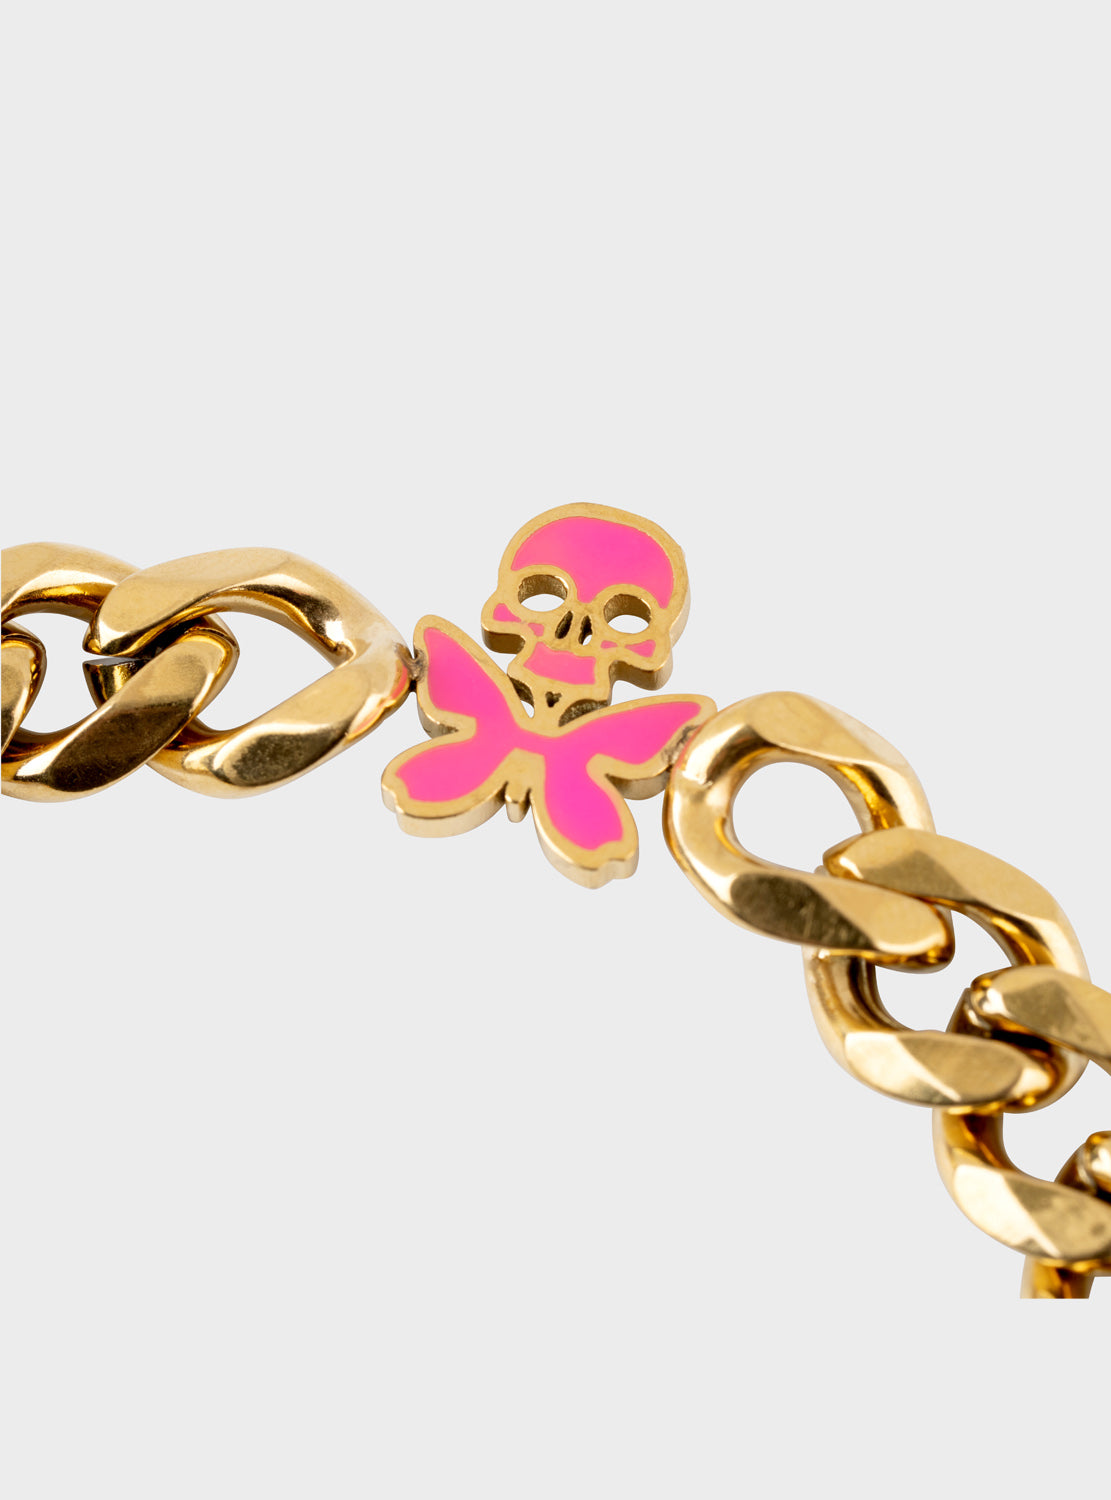 betty designs cuban bracelet skull butterfly charm